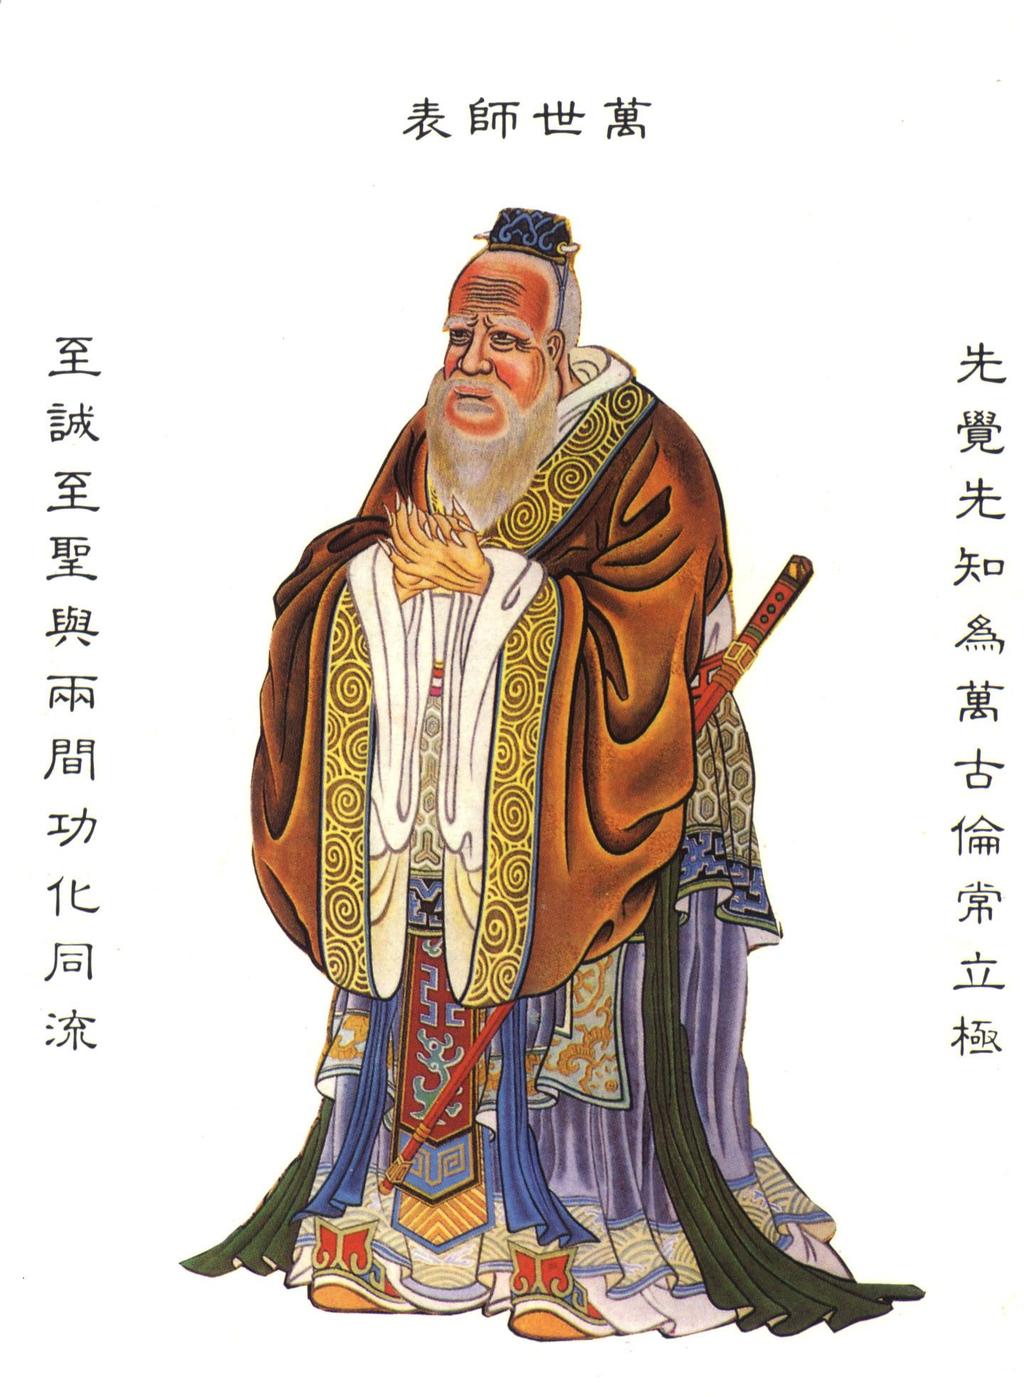 굶어죽을지언정신뢰사수하라 Confucius (551~479 BC) taught wisdom